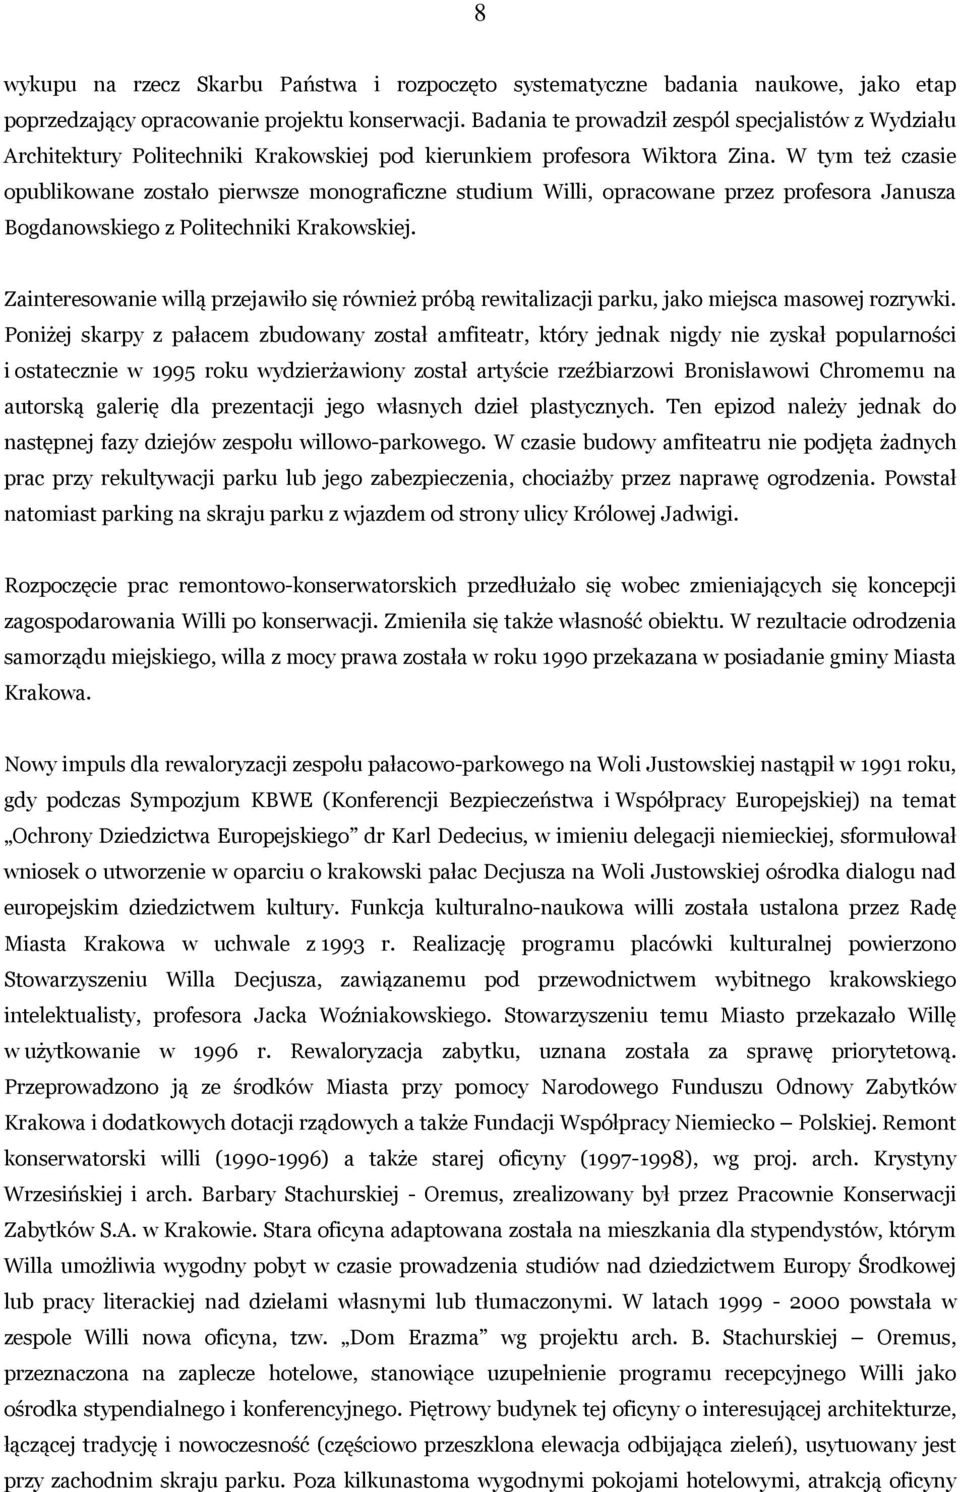 W tym też czasie opublikowane zostało pierwsze monograficzne studium Willi, opracowane przez profesora Janusza Bogdanowskiego z Politechniki Krakowskiej.